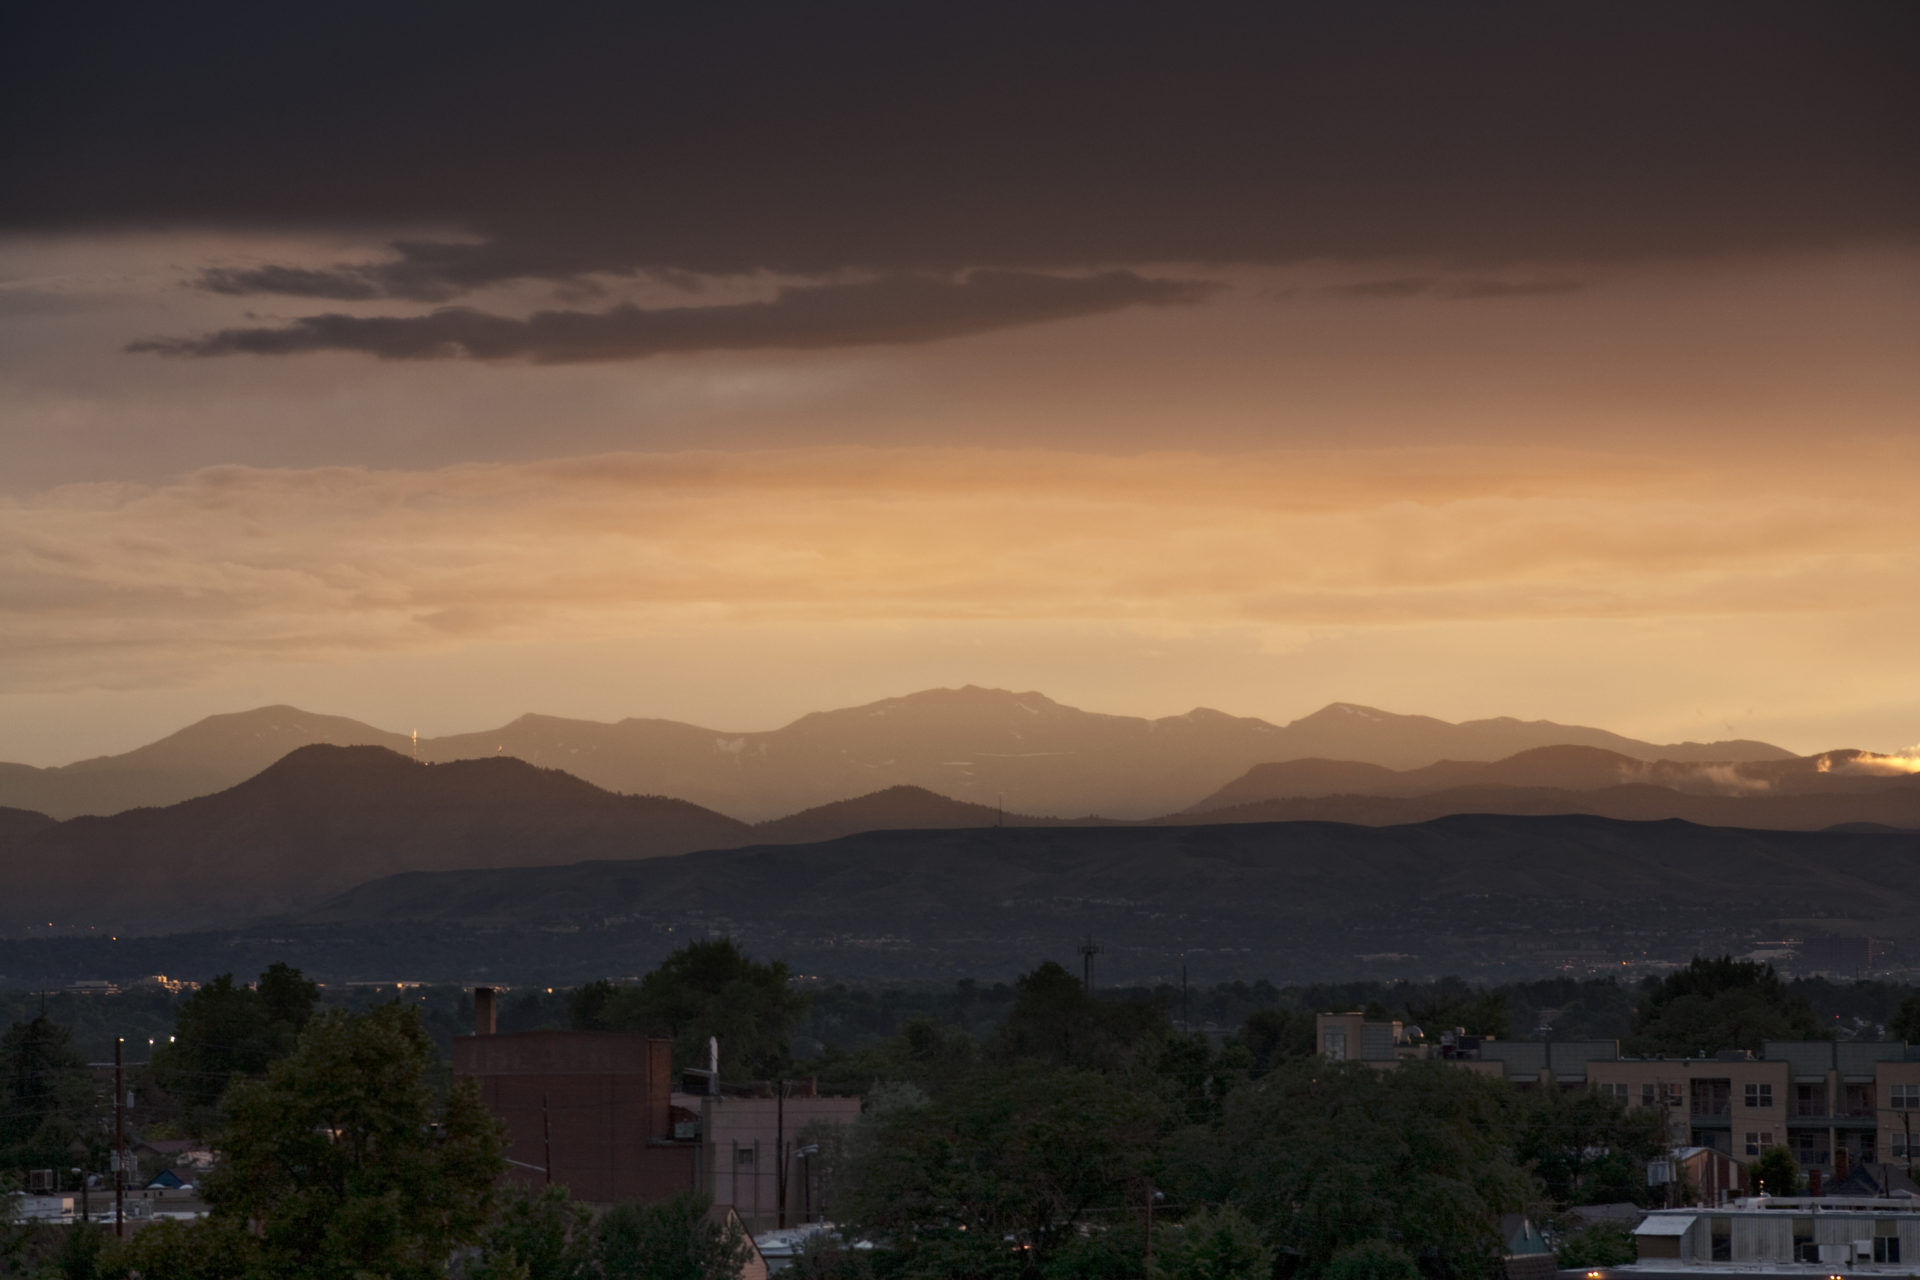 Mount Evans sunset - July 26, 2011